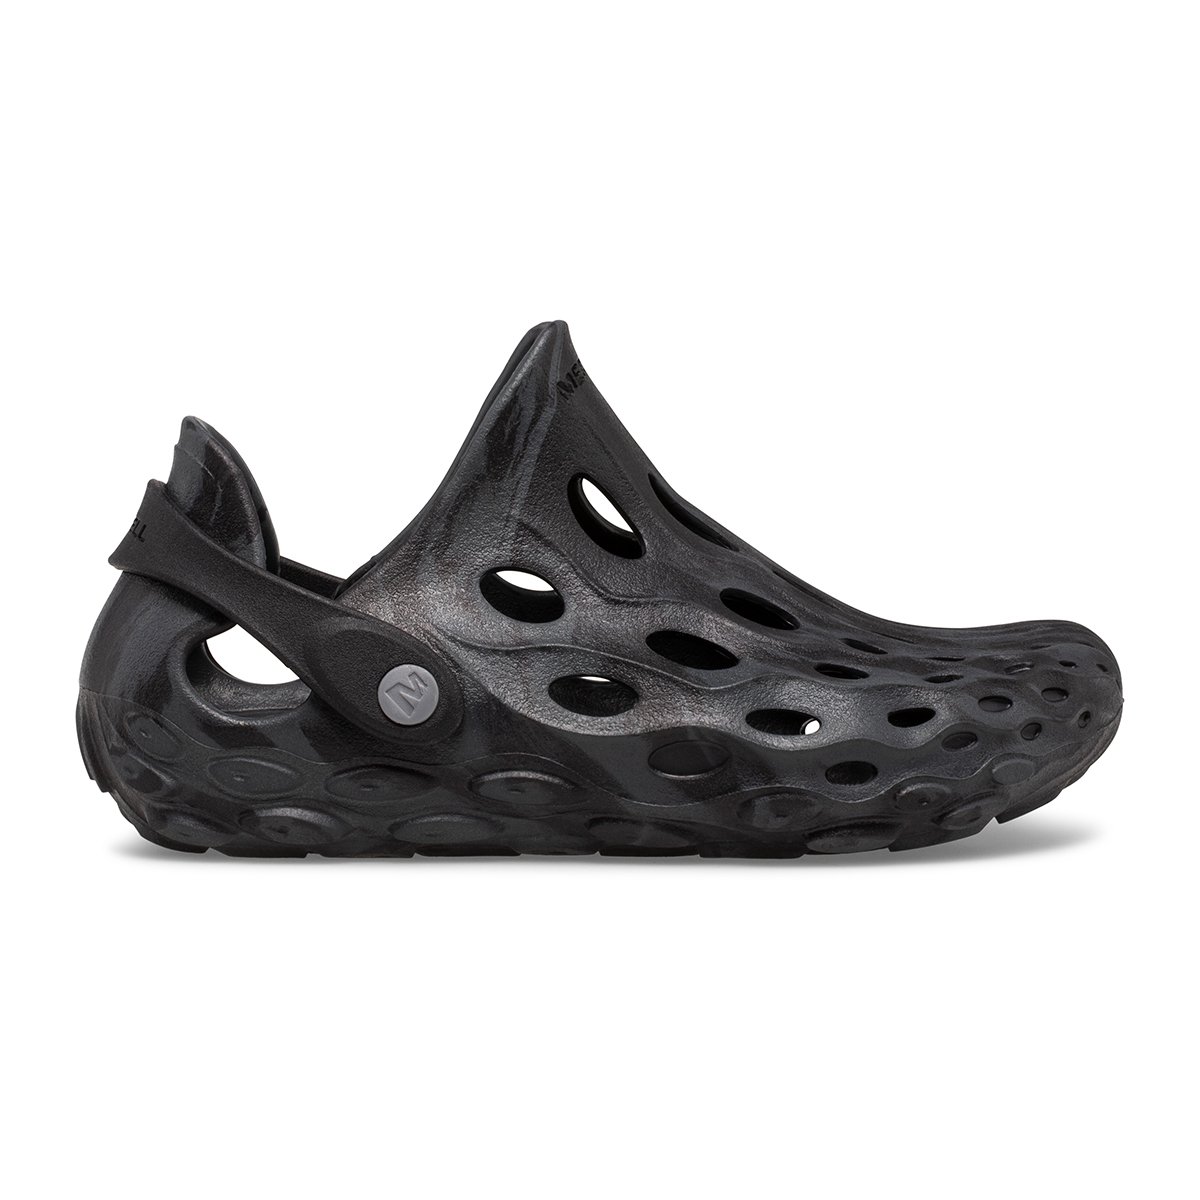 Merrell Hydro Moc Çocuk Su Ayakkabısı - Siyah - 1